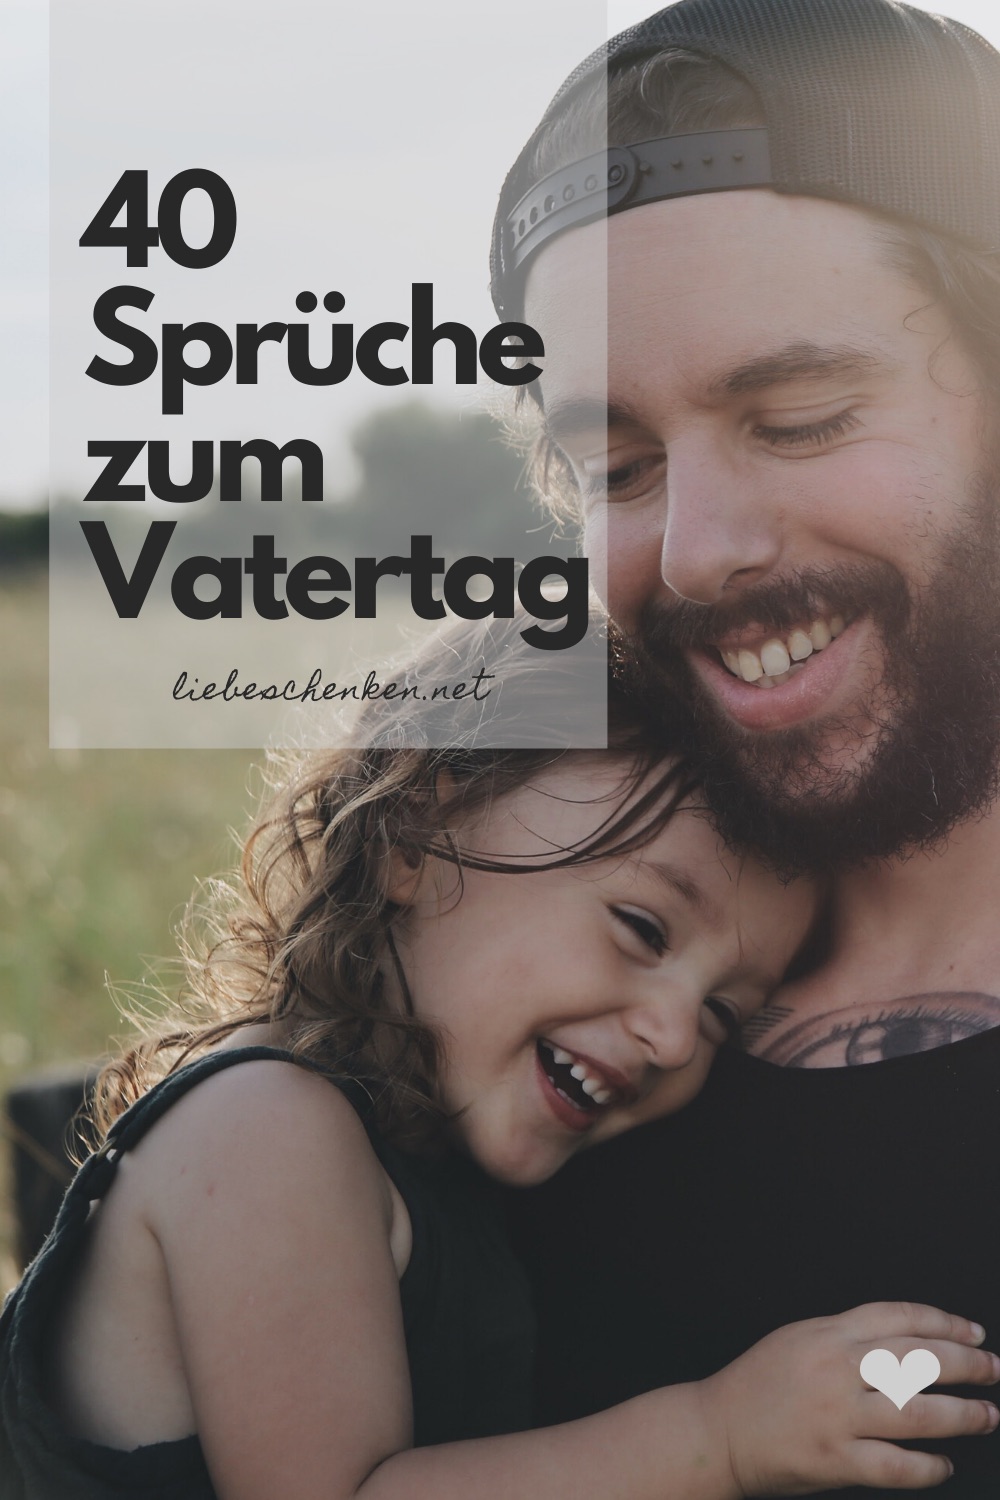 Vatertagsgedichte 40 Schone Spruche Gedichte Zum Vatertag